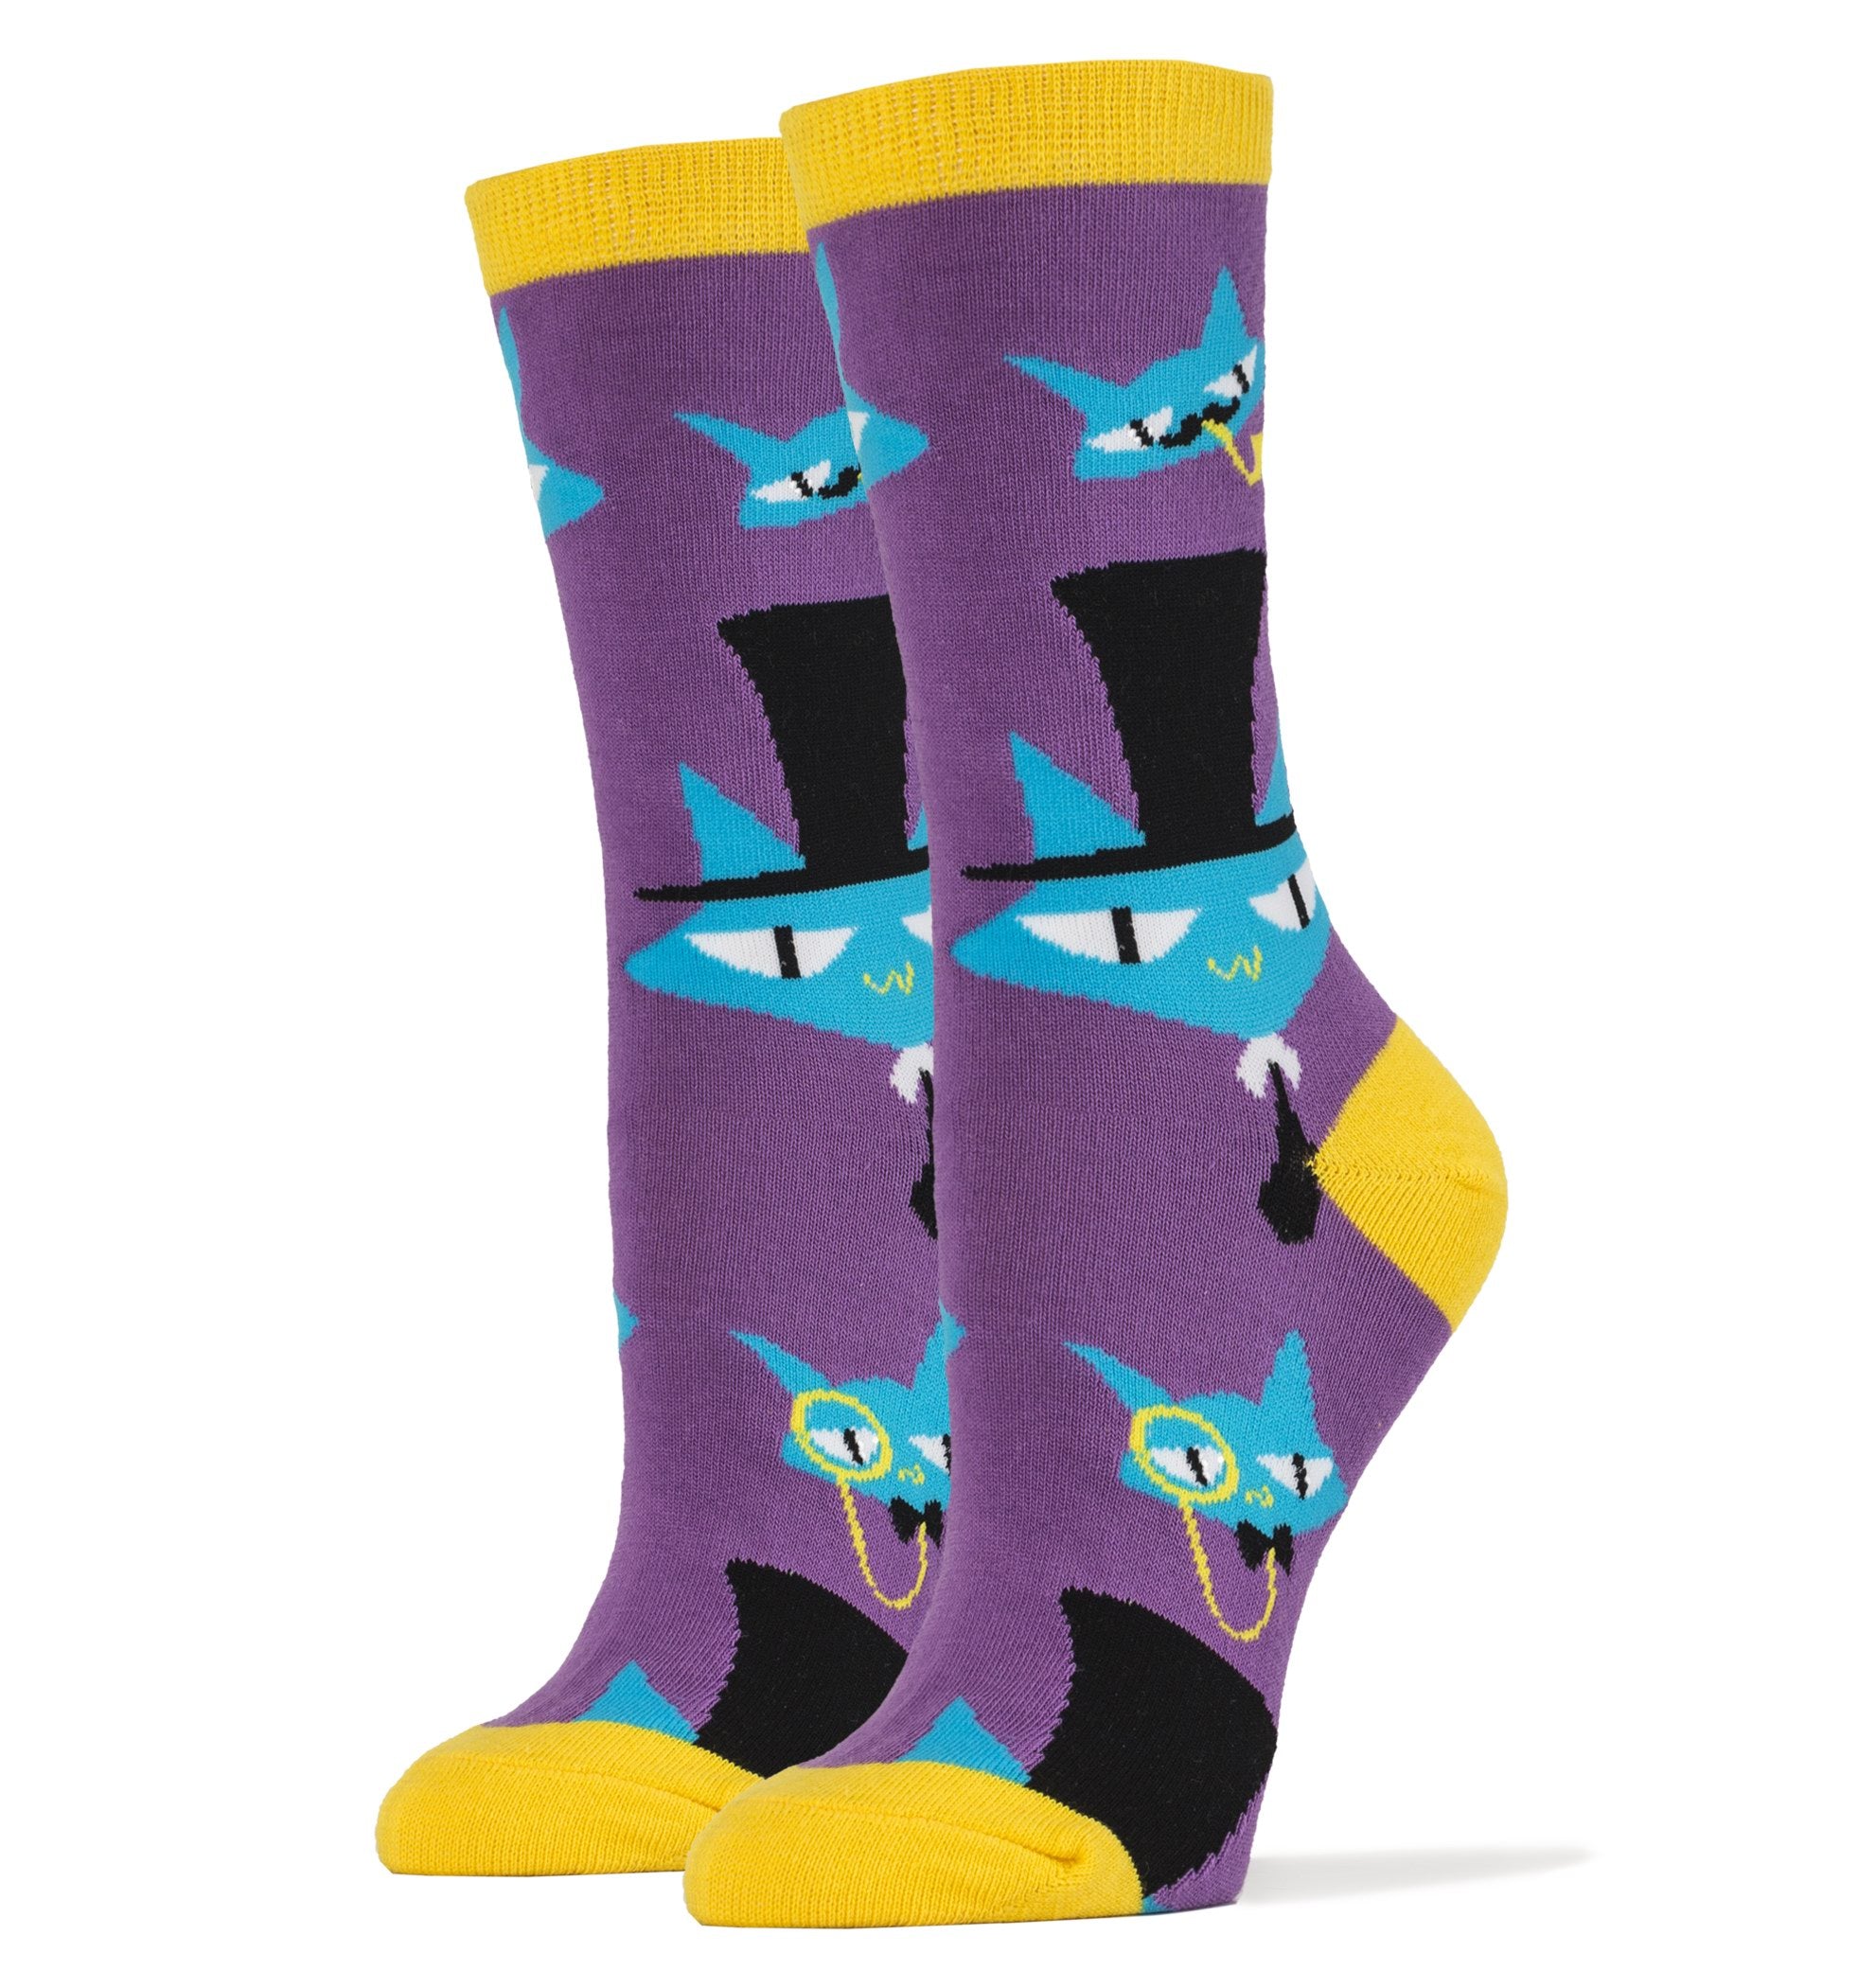 Le Fancy Cats Socks | Novelty Crew Socks For Women